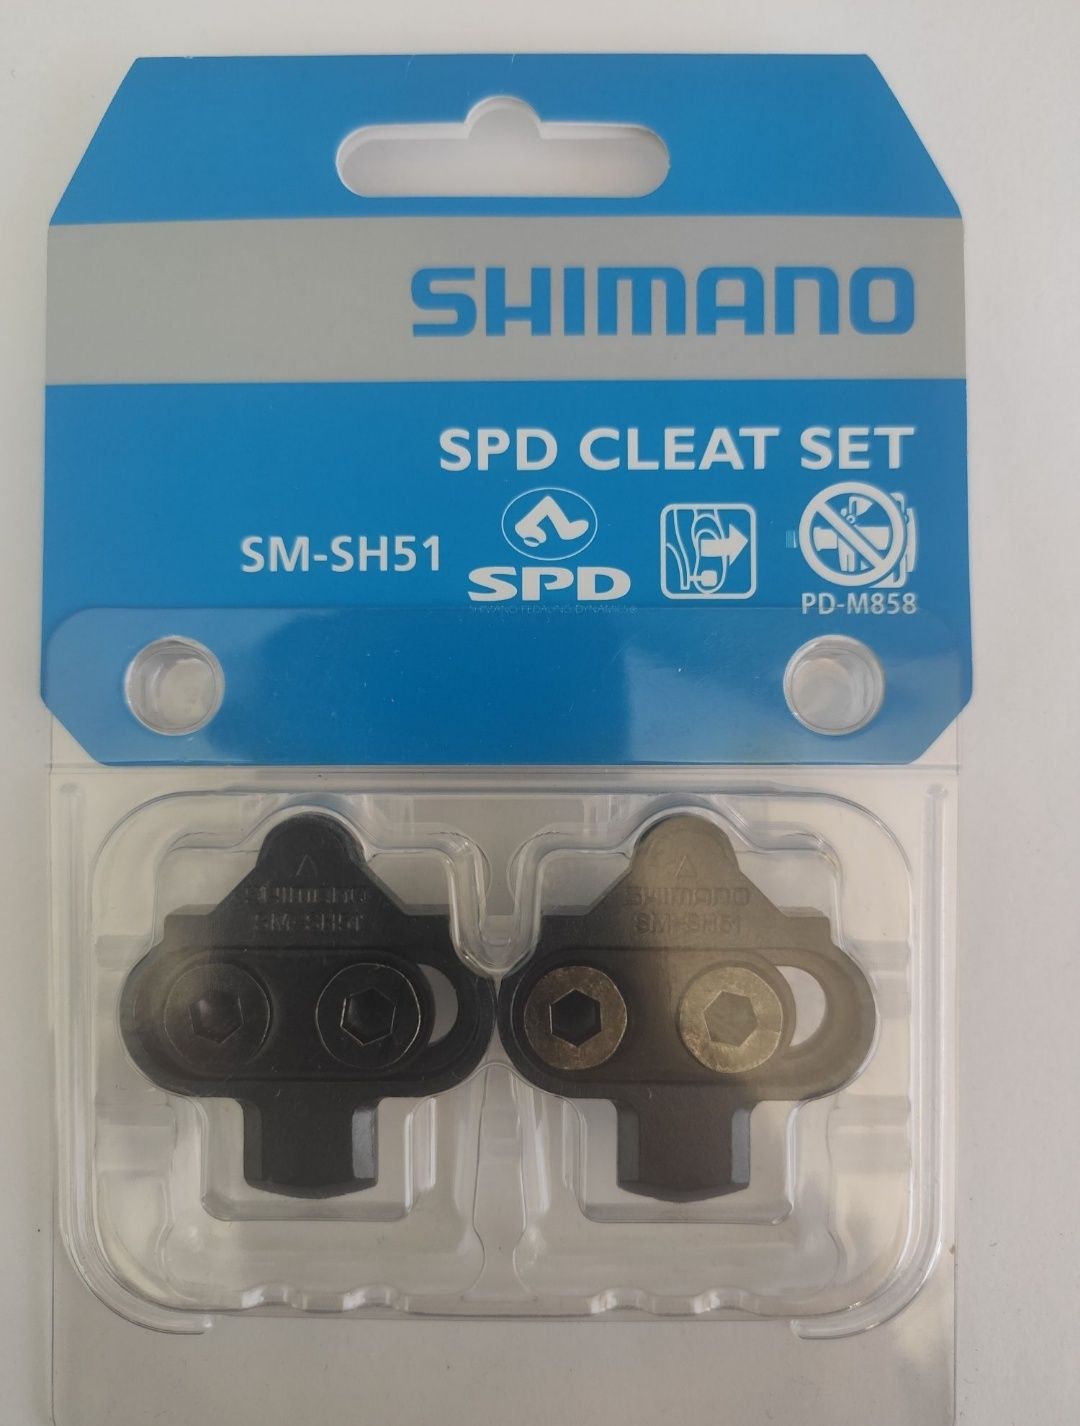 Шипы shimano  SM-SH51  оригинал xt xtr slx

Шипы MTB Shiman